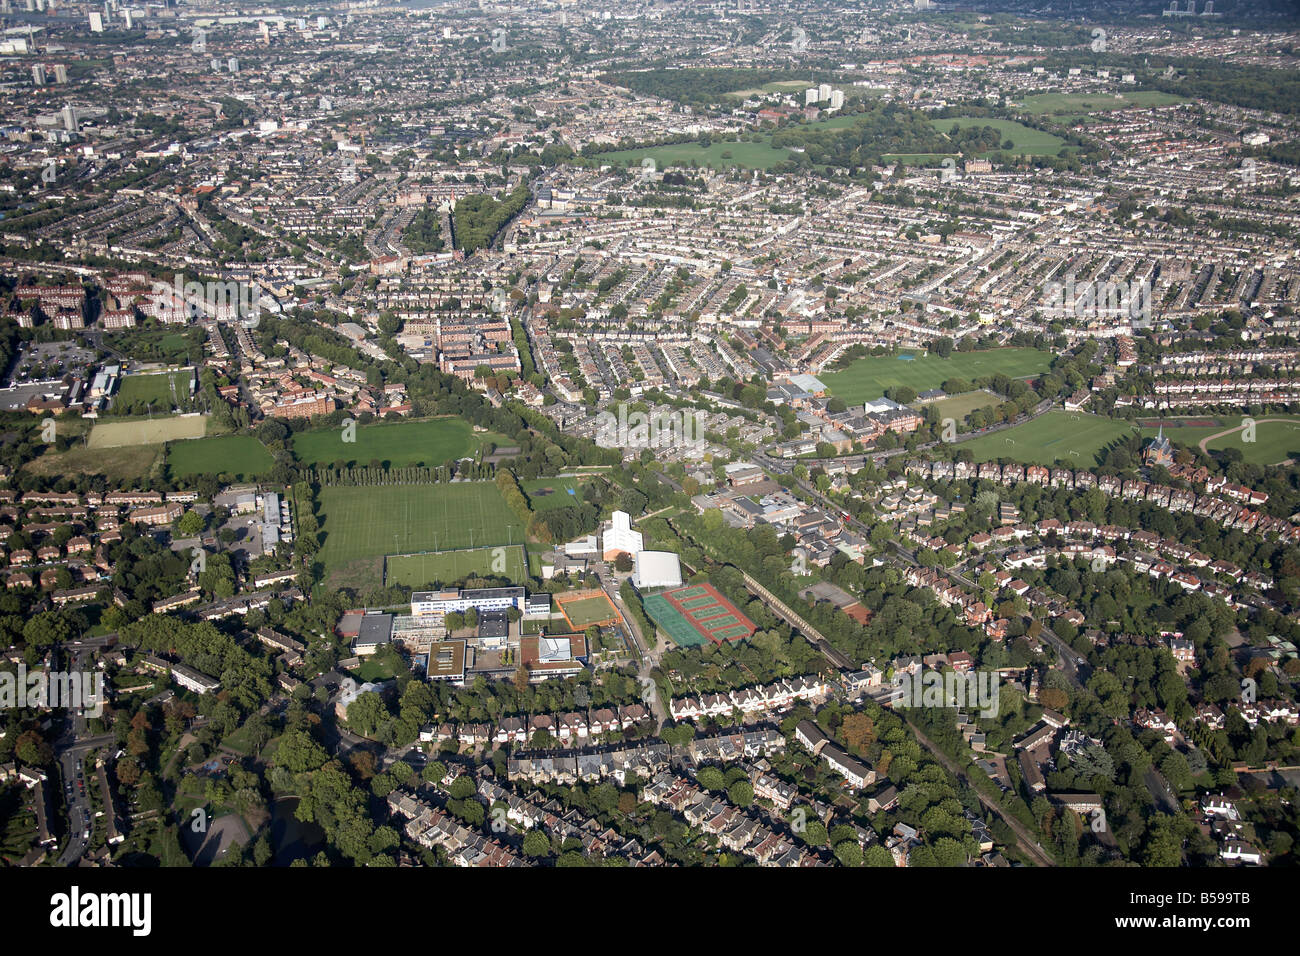 Vista aerea del nord est di Dulwich Alta Scuola campi di gioco campi da tennis case suburbane Peckham Rye Comuni di Londra SE22 SE15 Foto Stock